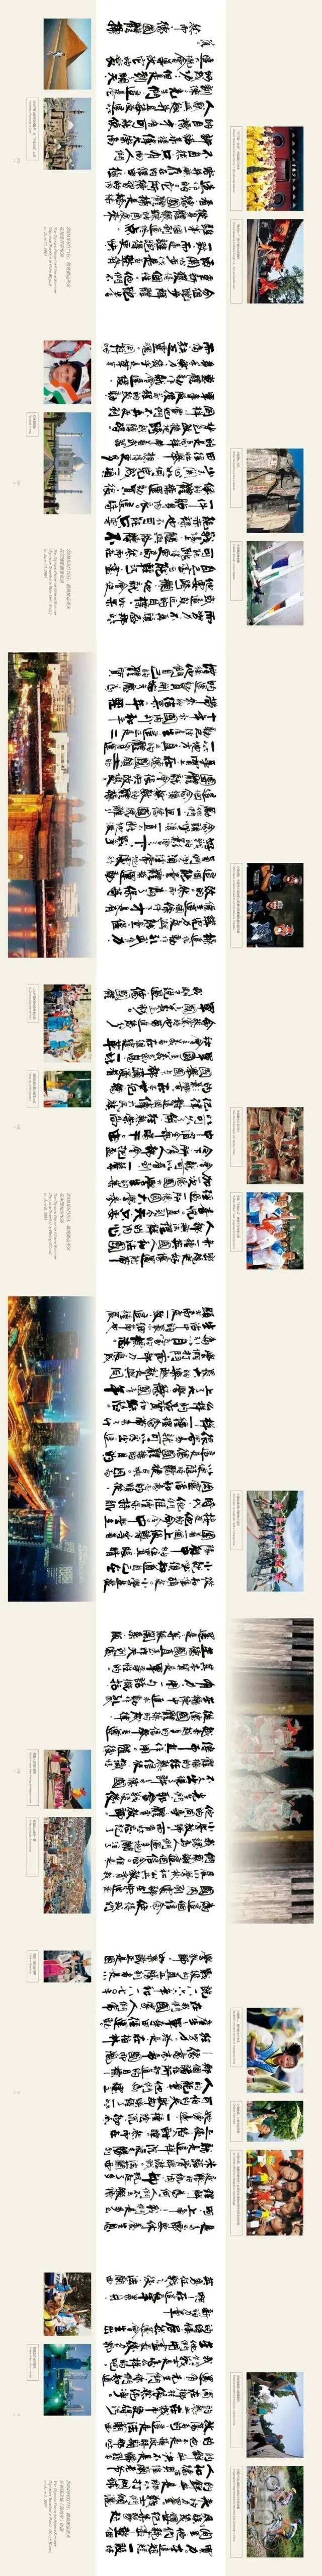 从“双奥之城”北京出发 向世界展示奥林匹克文化之美